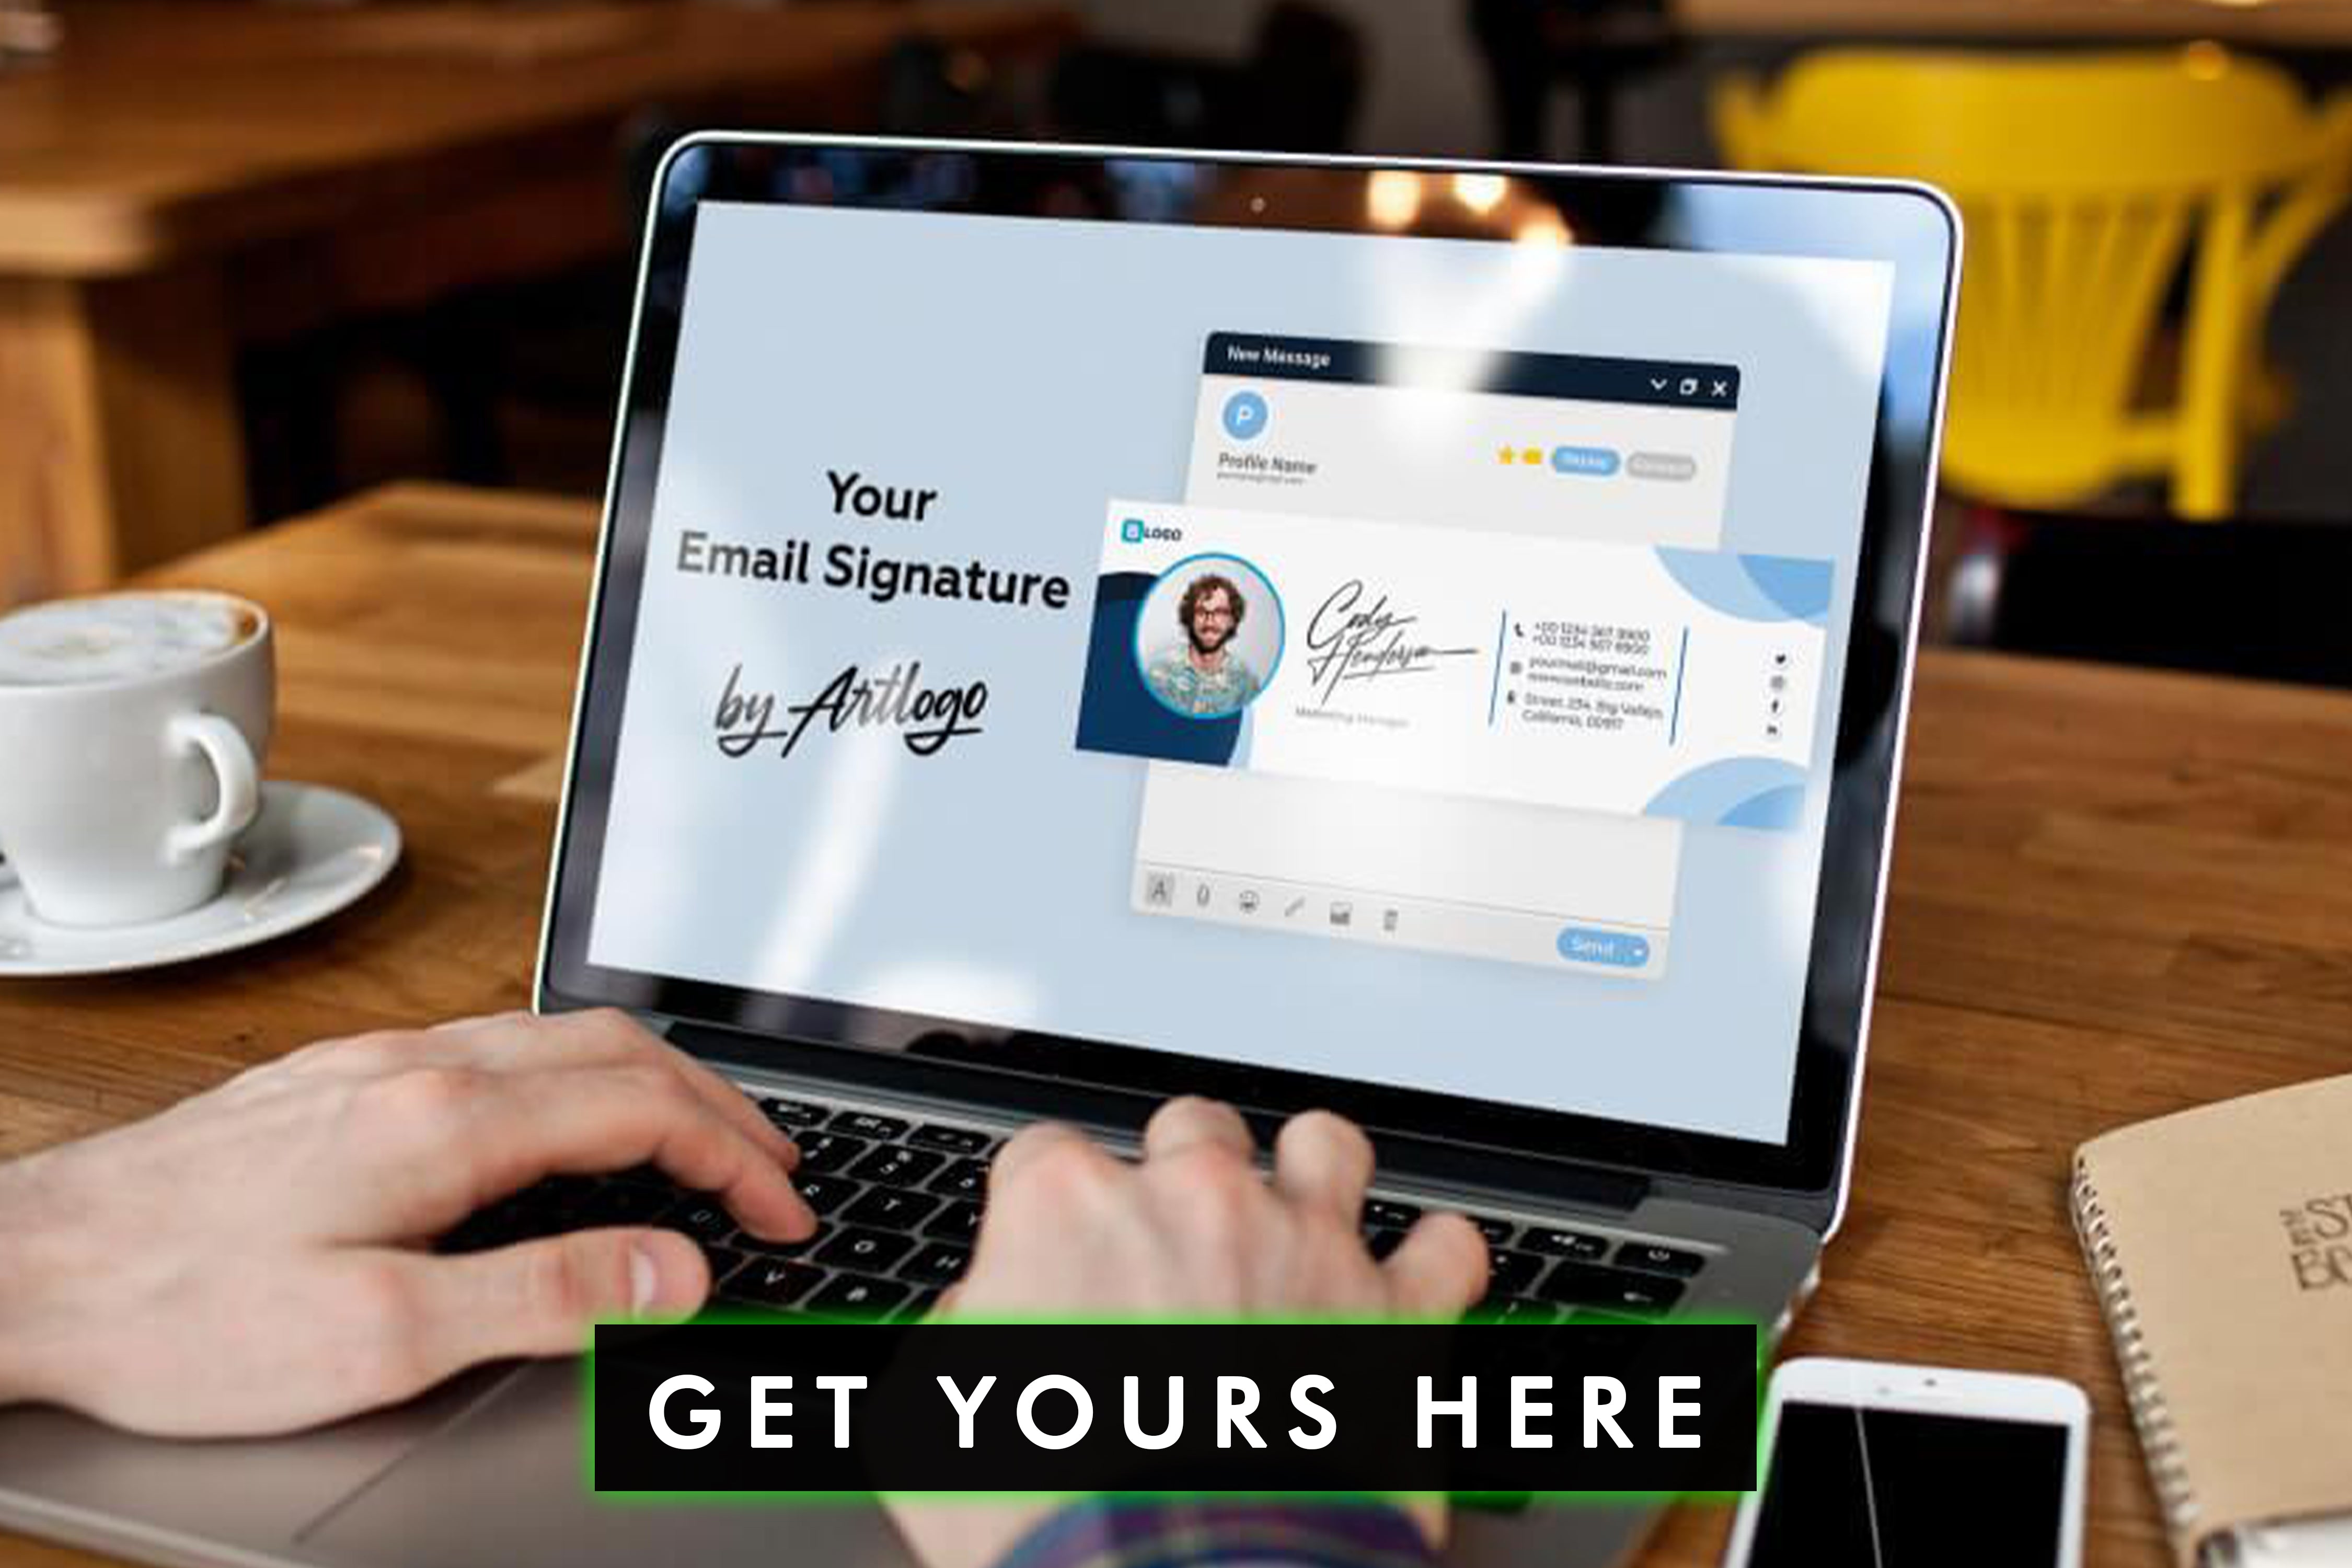 Îmbunătățiți-vă imaginea de marcă și asigurați-vă consecvența cu o semnătură de e-mail standardizată a companiei, care să reprezinte valorile și identitatea mărcii dumneavoastră.